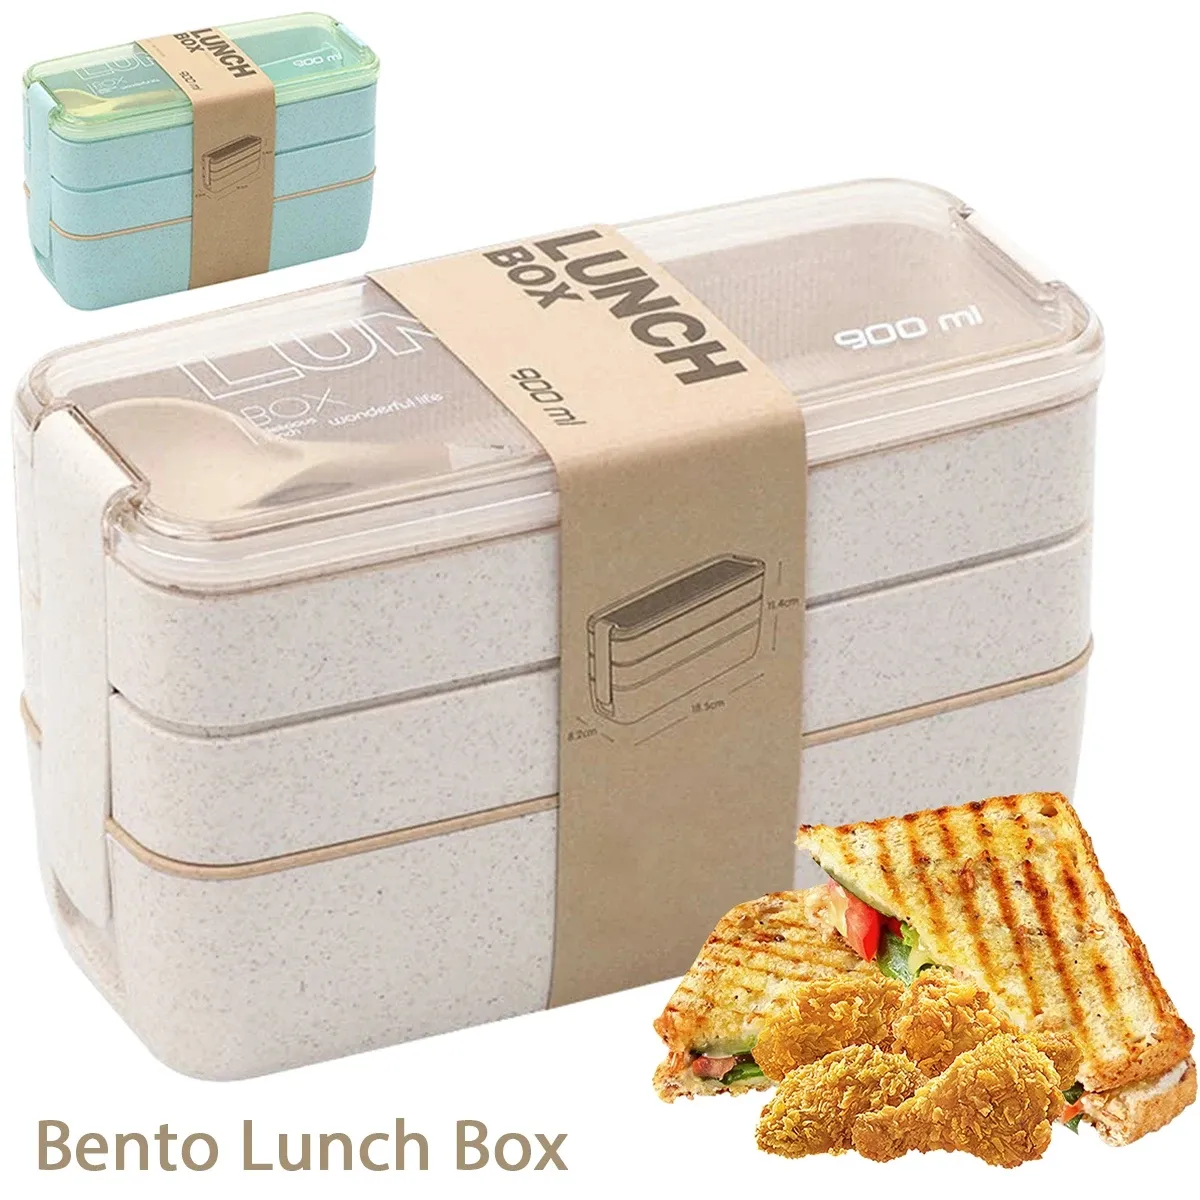 Wolesale 900ml Bento Kutusu Çocuklar İçin 3 Yığınlanabilir Öğle Yemeği Kutusu Sızıntı Koşullu Taşınabilir Öğle Yemeği Konteyner Buğday Saman Gıda Depolama Kutusu Bulaşık Makinesi